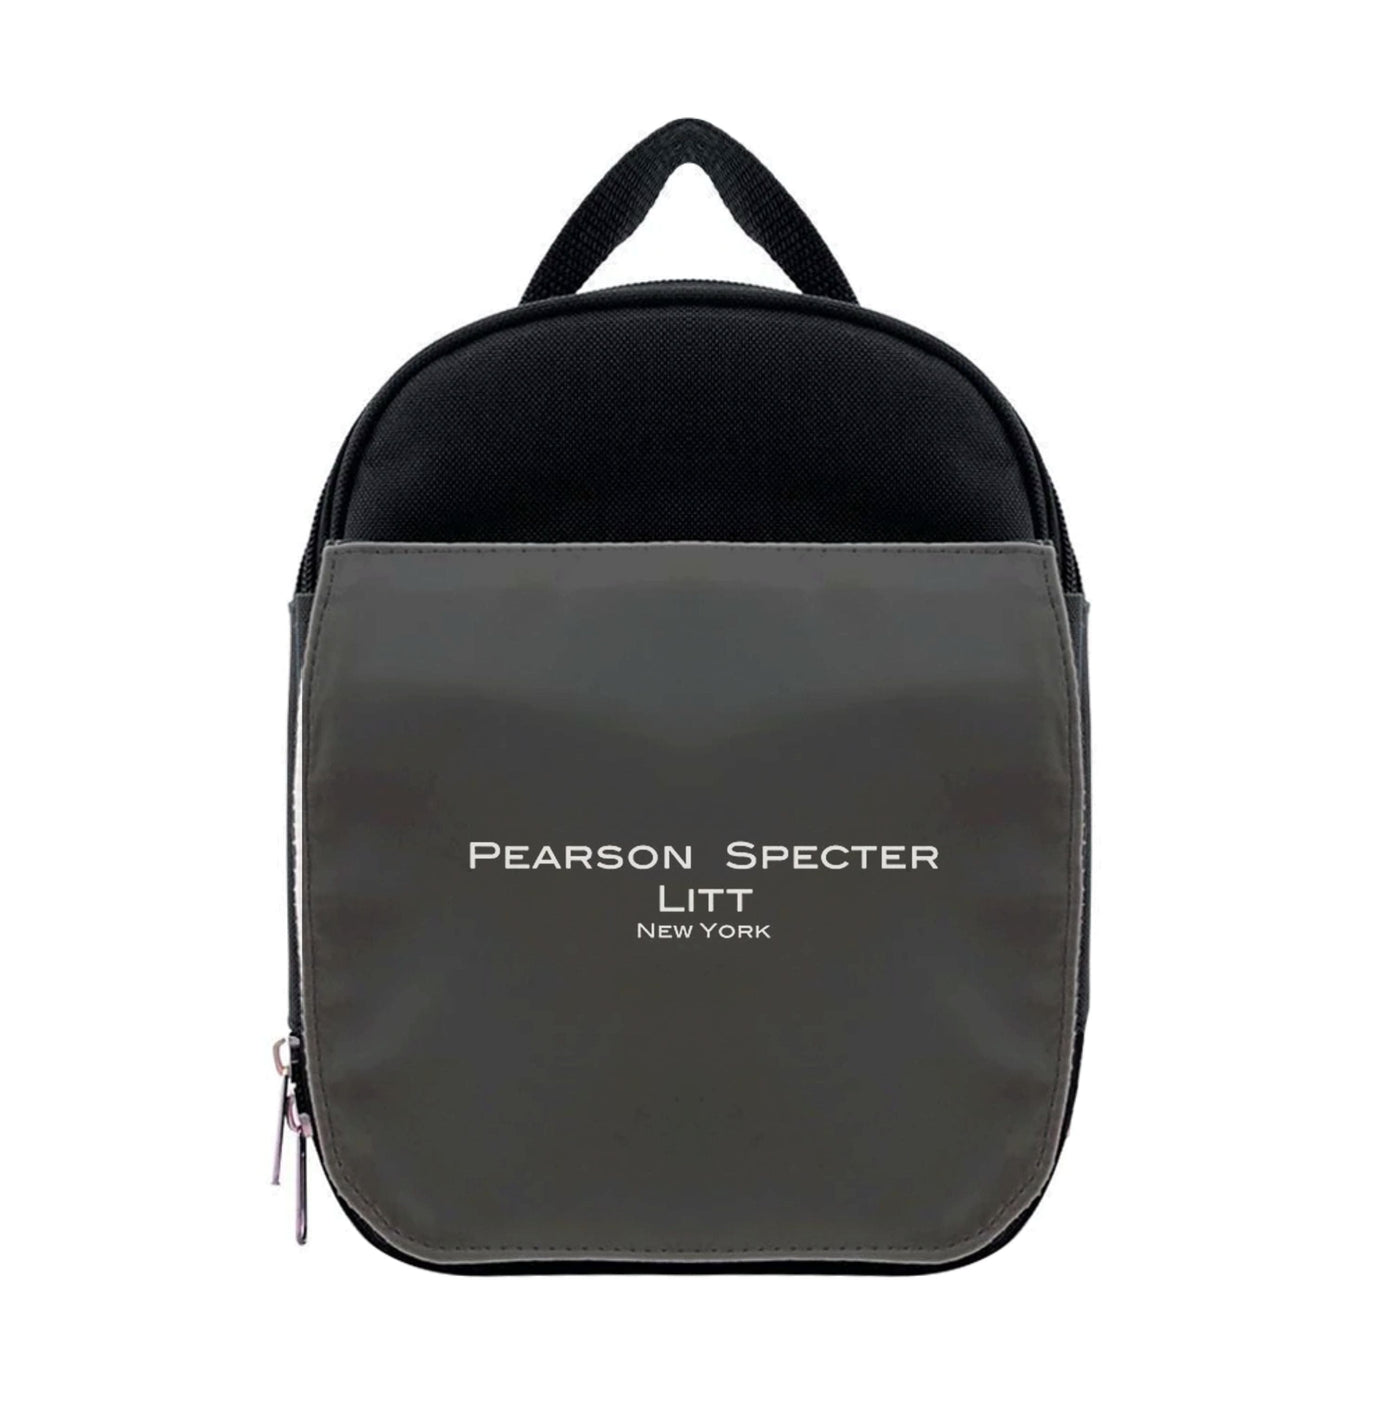 Pearson Specter Litt - Suits Lunchbox